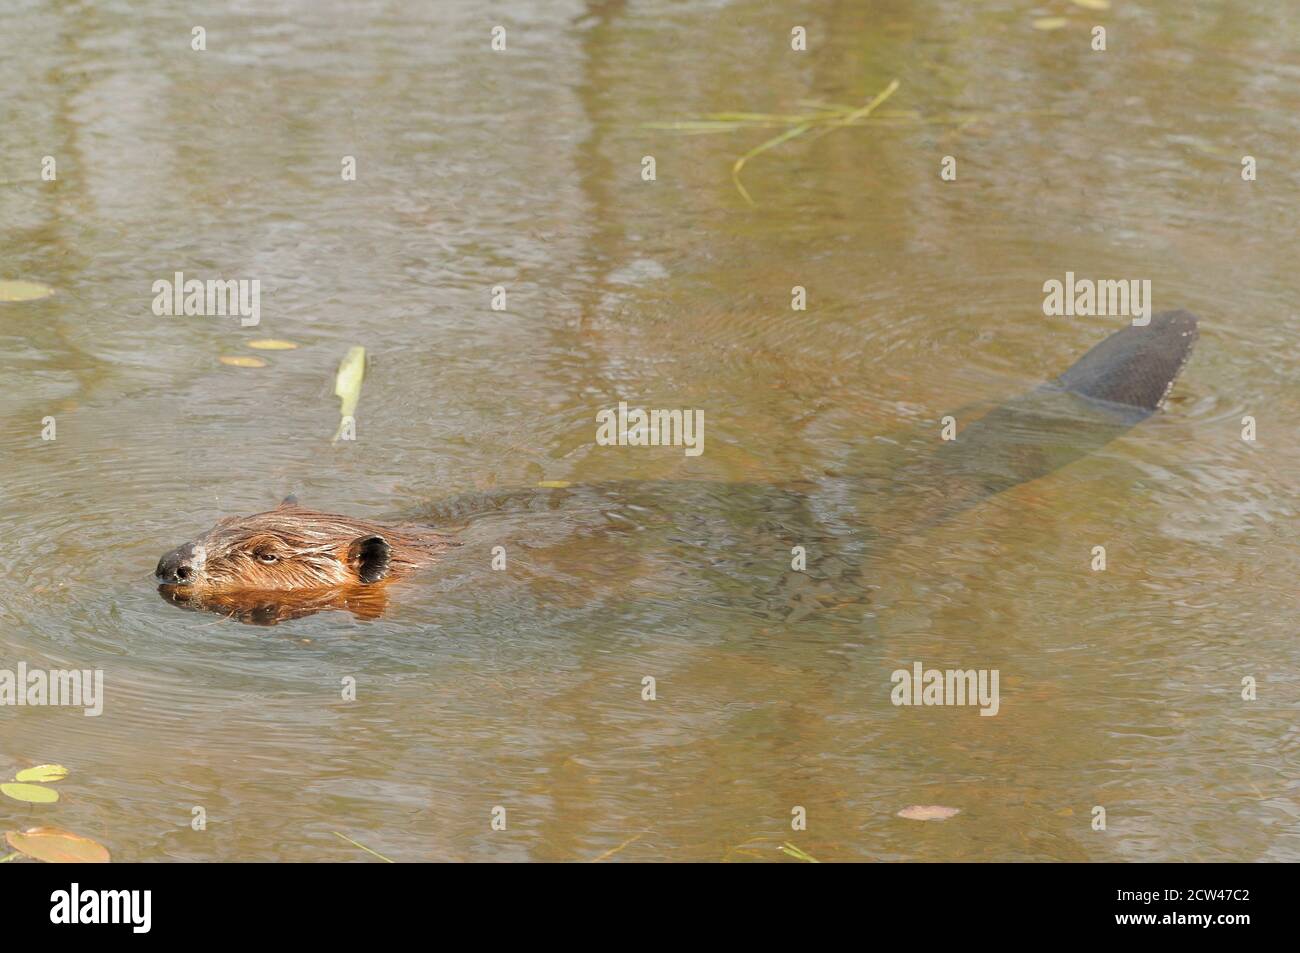 Biber Nahaufnahme Profilansicht im Wasser mit braunem nassen Pelzfell, Körper, Biberschwanz, in seinem Lebensraum und Umgebung. Stockfoto